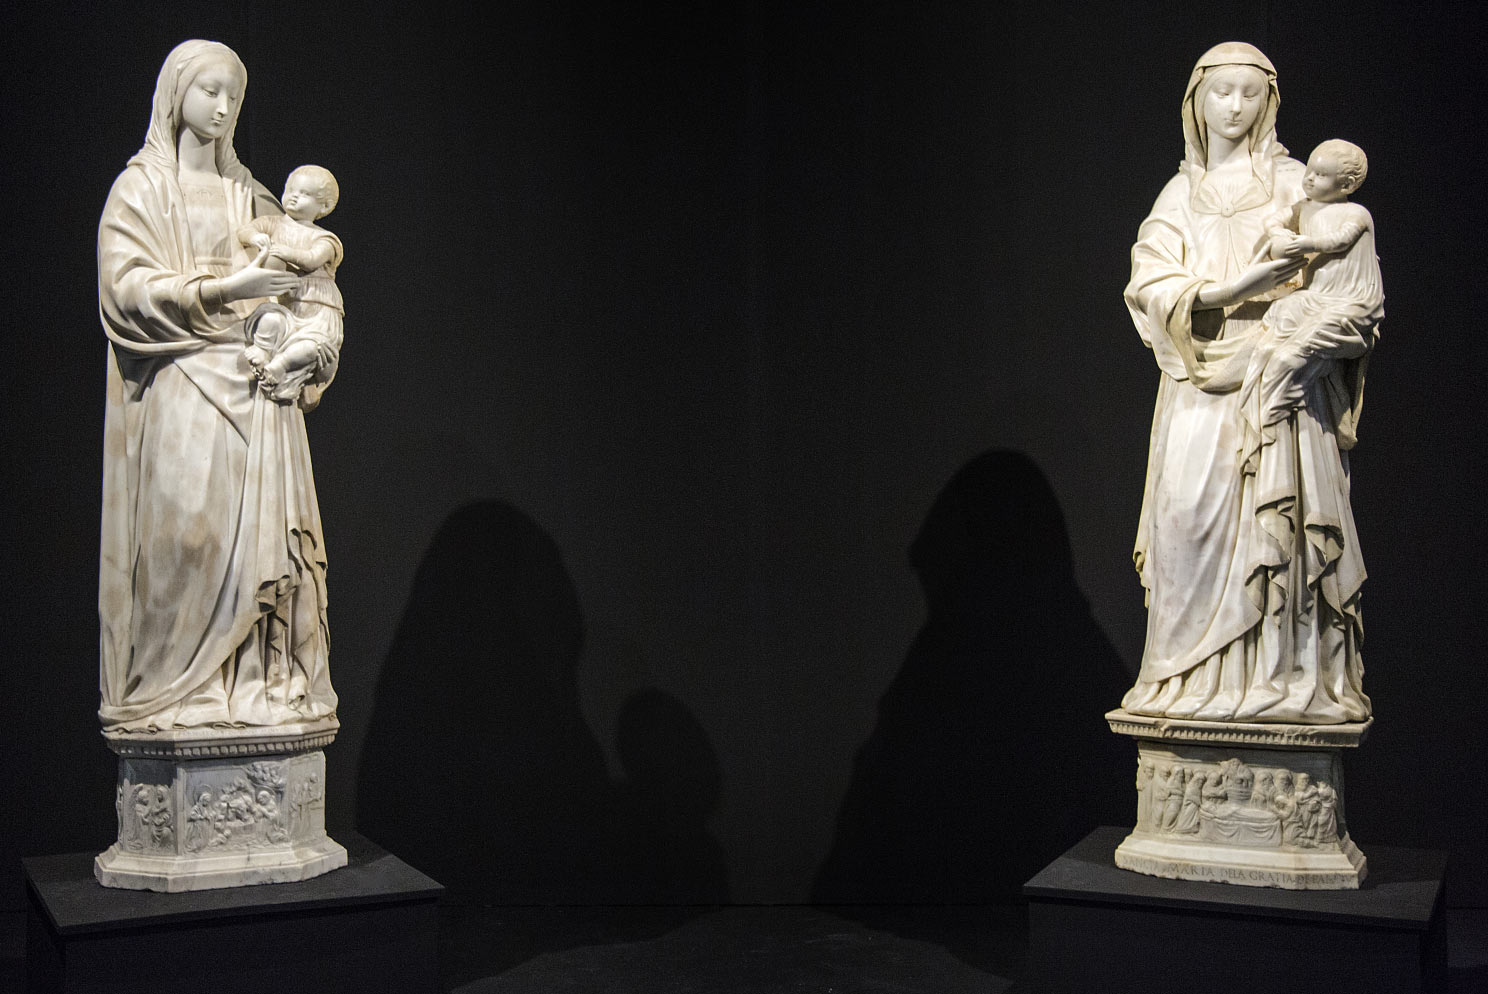 A sinistra: Francesco Laurana, Madonna della Neve (1471; marmo; Noto, Santissimo Crocifisso). A destra: Francesco Laurana, Madonna della Grazia (1472-1474; marmo; Palazzolo Acreide, Chiesa dell'Immacolata)
